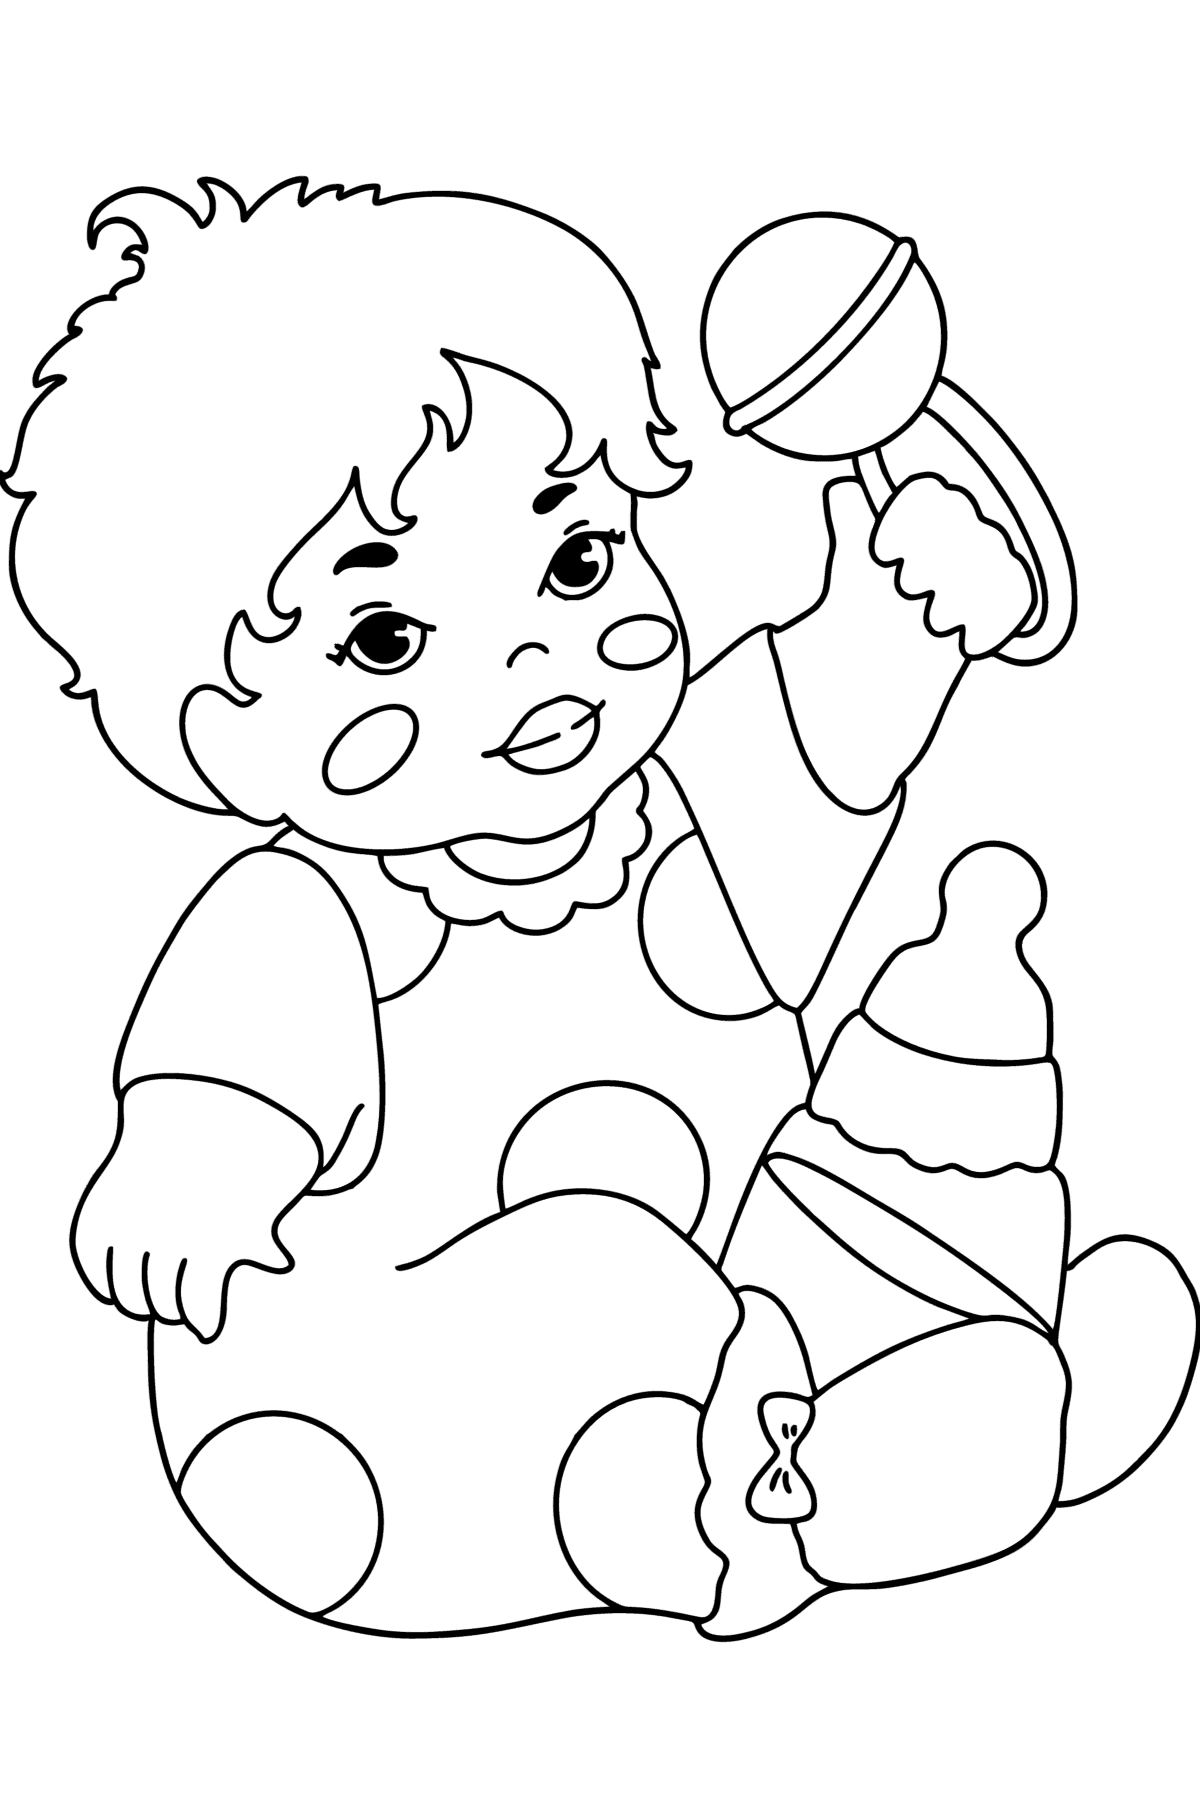 Раскраска Малыш с погремушкой - Картинки для Детей